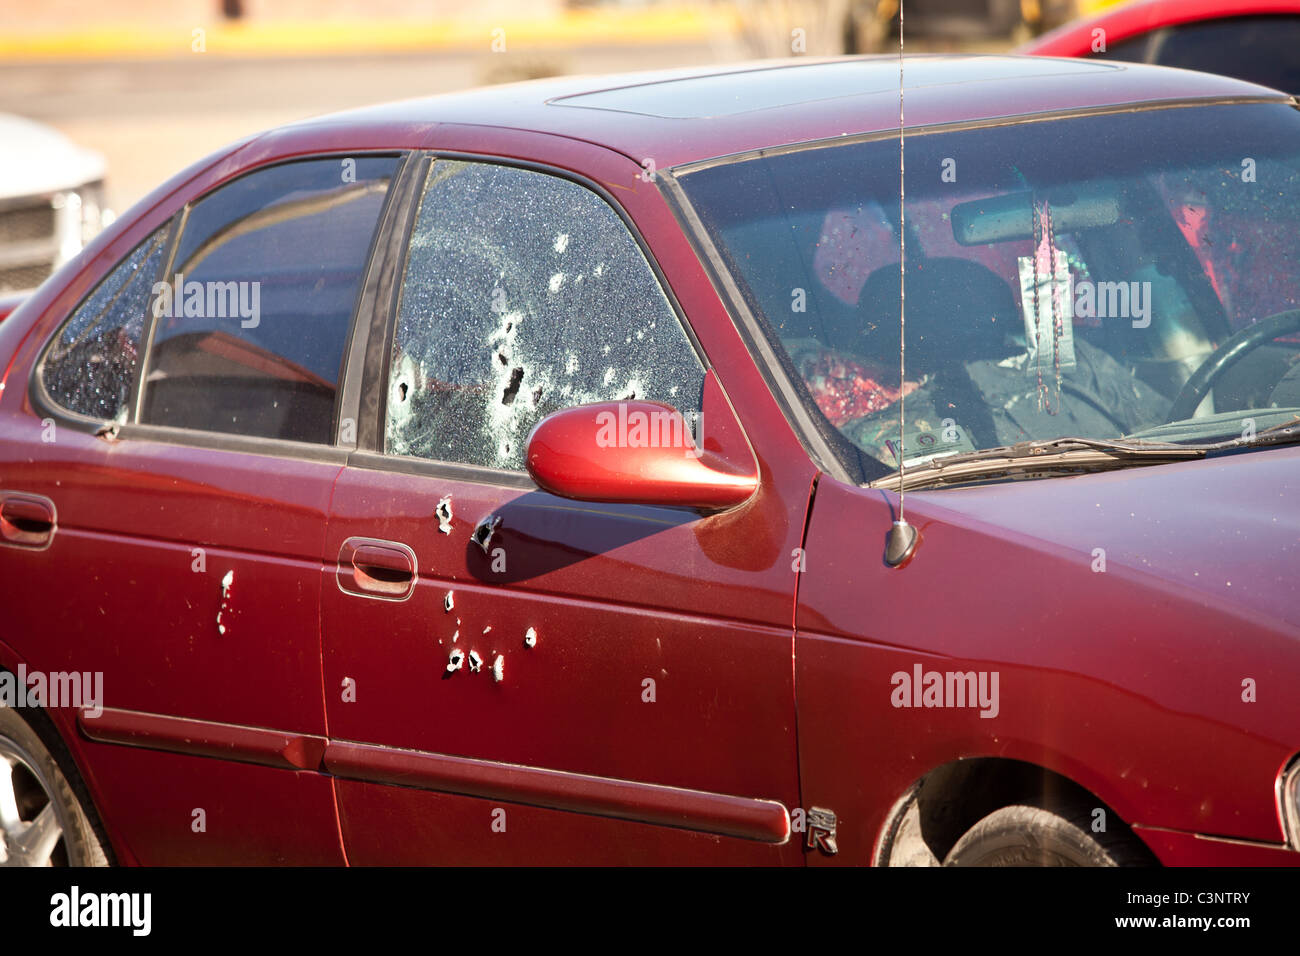 Bullet riddle le côté d'une voiture où quelques instants plus tôt attribue abattu un policier à la drug wars Juarez, Mexique Banque D'Images